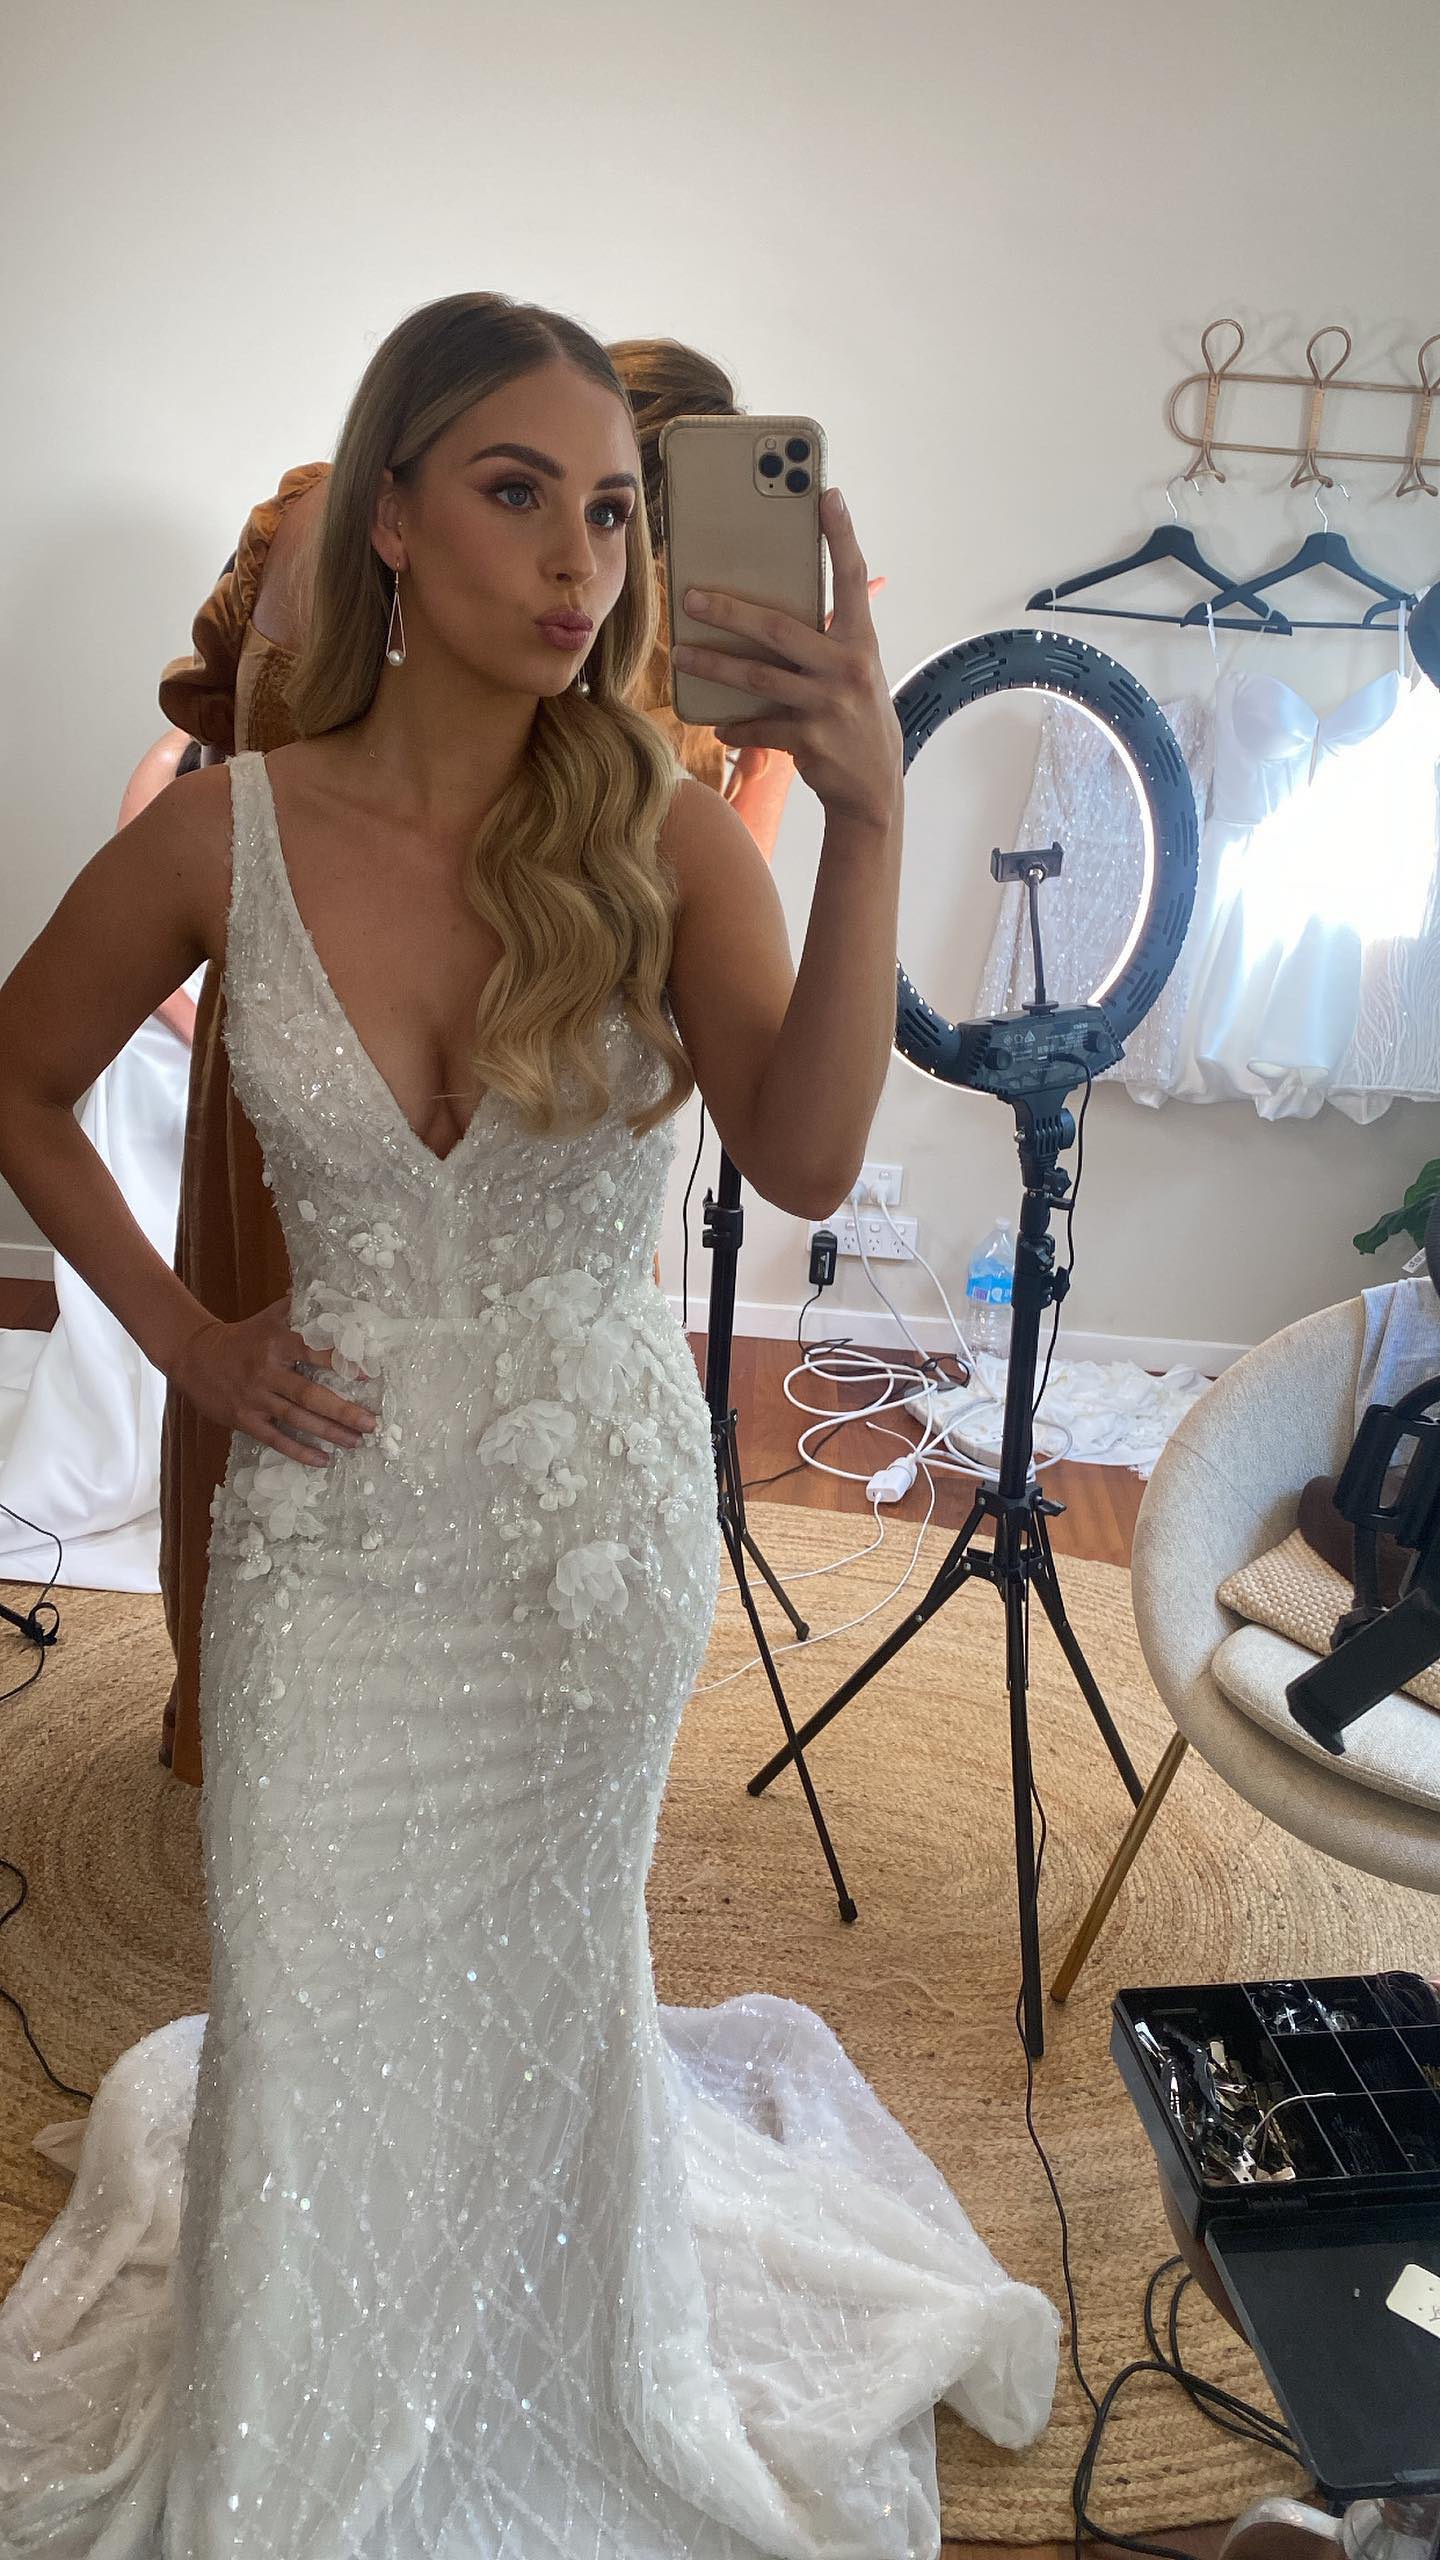 model posing for selfie in beaded wedding dress